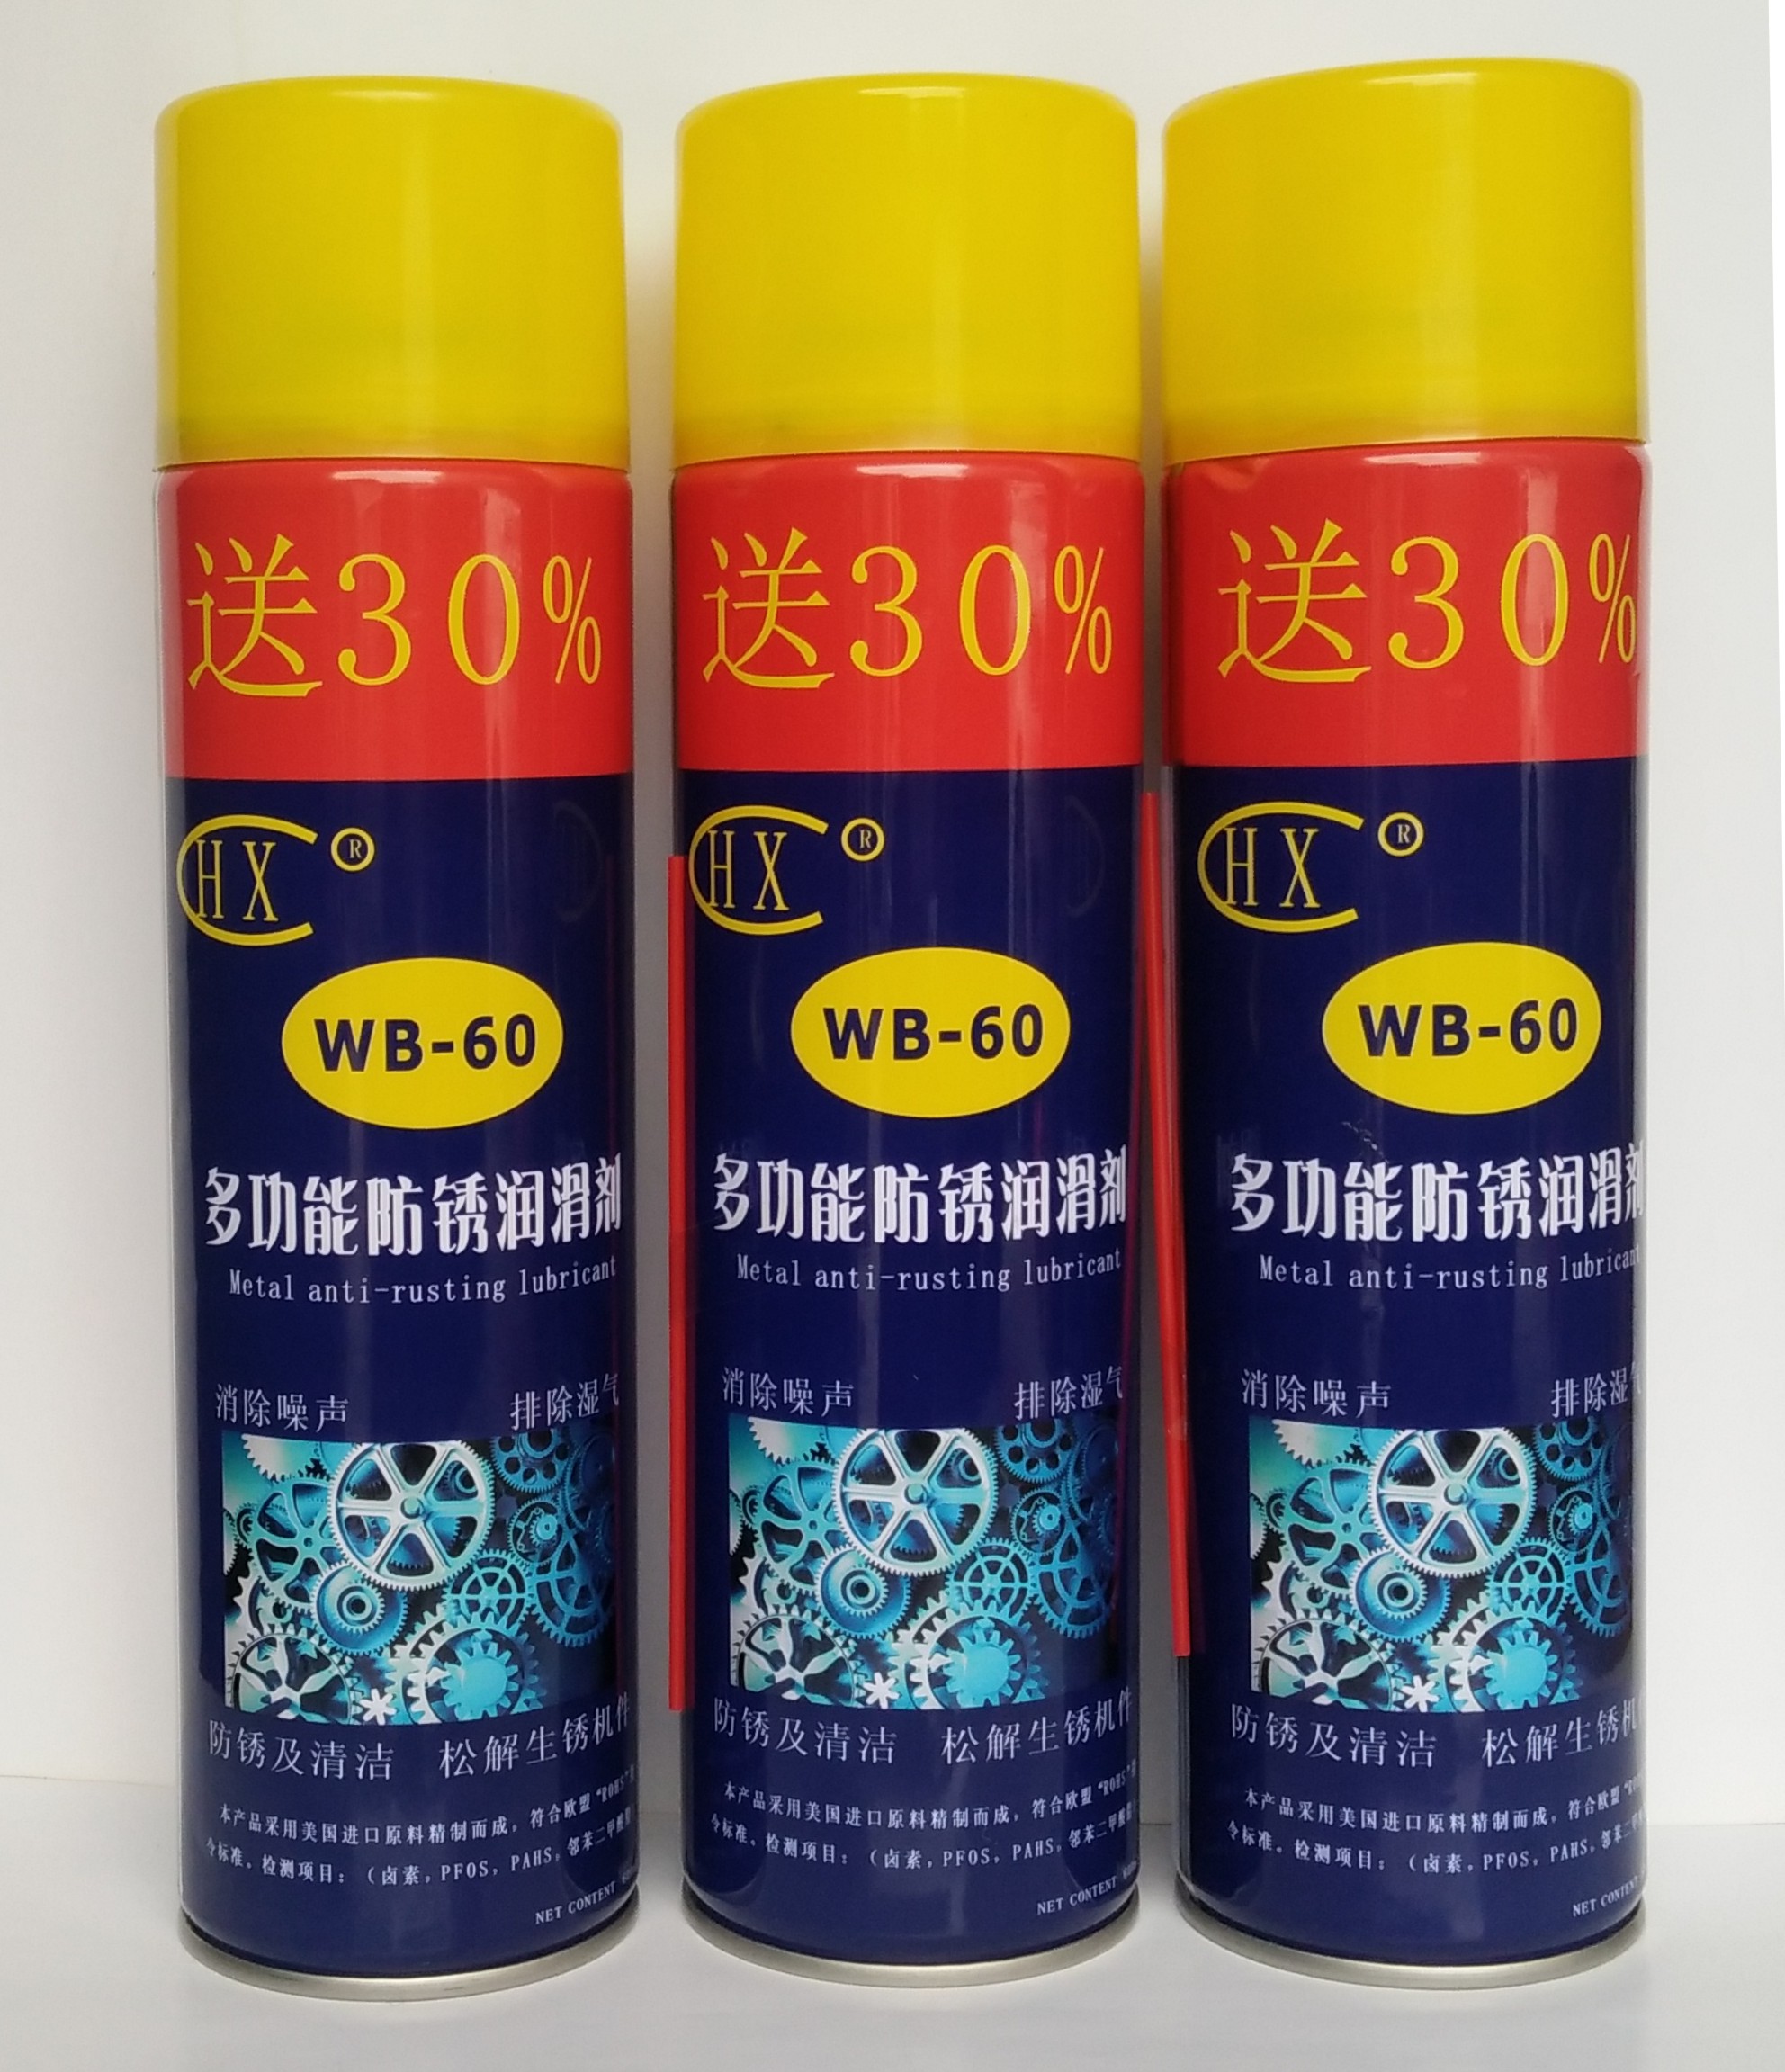 多功能防锈润滑剂  WD-40  无卤多al能防锈润滑剂  可代替 WD-40的防锈润滑剂 多功能防锈润滑剂  WD-4